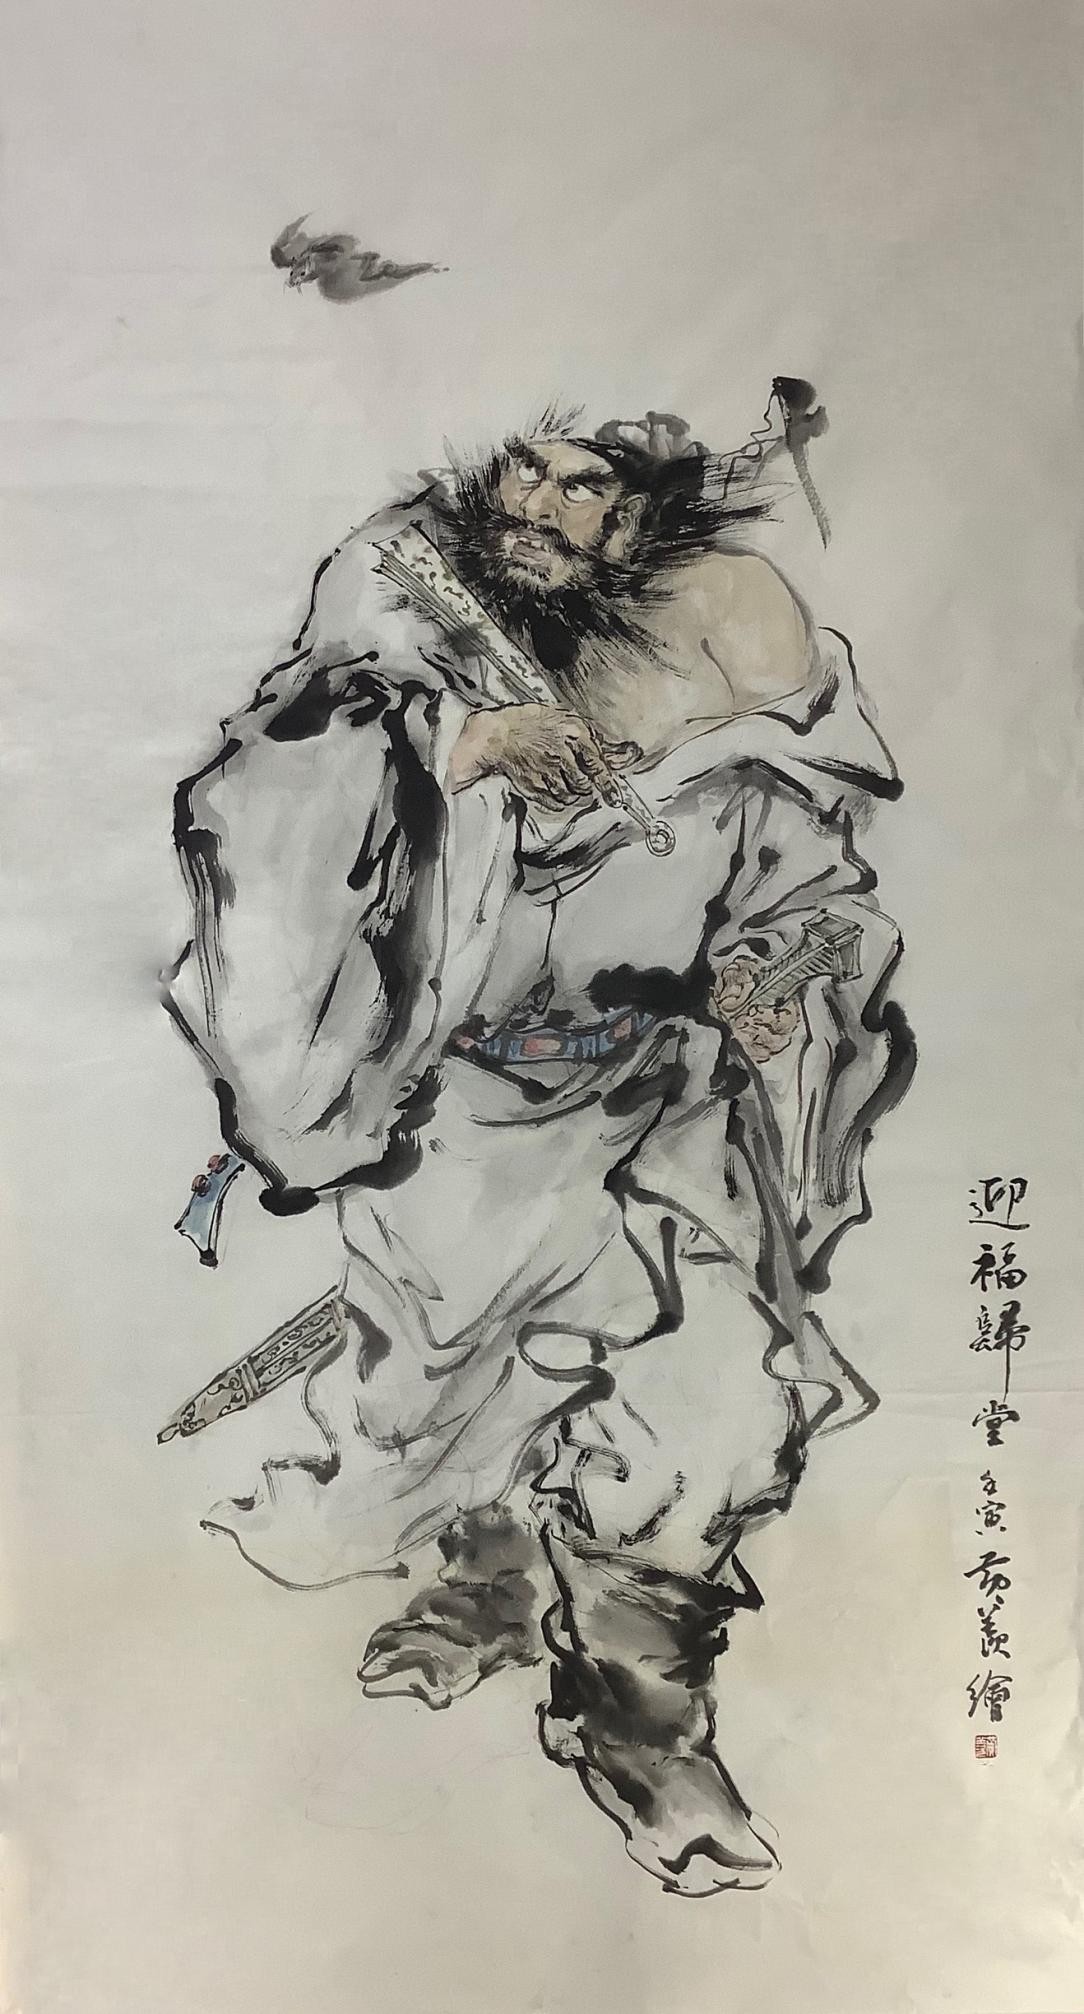 著名画家黄羡作品《放下布袋何等自在》被中国国家博物馆收藏